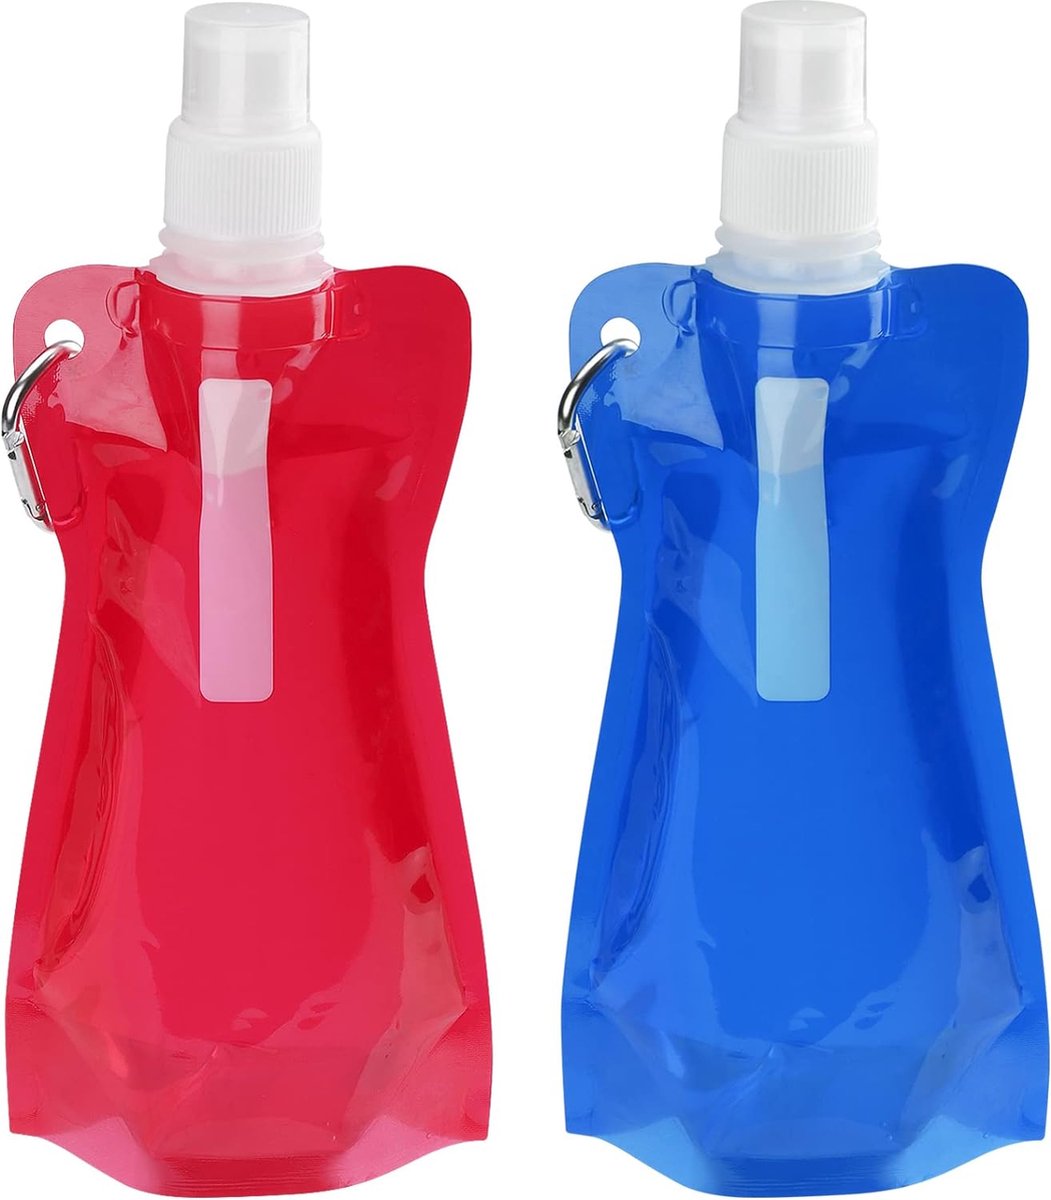 2 stuks - Opvouwbare drinkfles BPA-vrij, herbruikbare drinkfles, 500 ml, met karabijnhaak, draagbaar, voor wandelen, reizen, avontuur (rood en blauw)